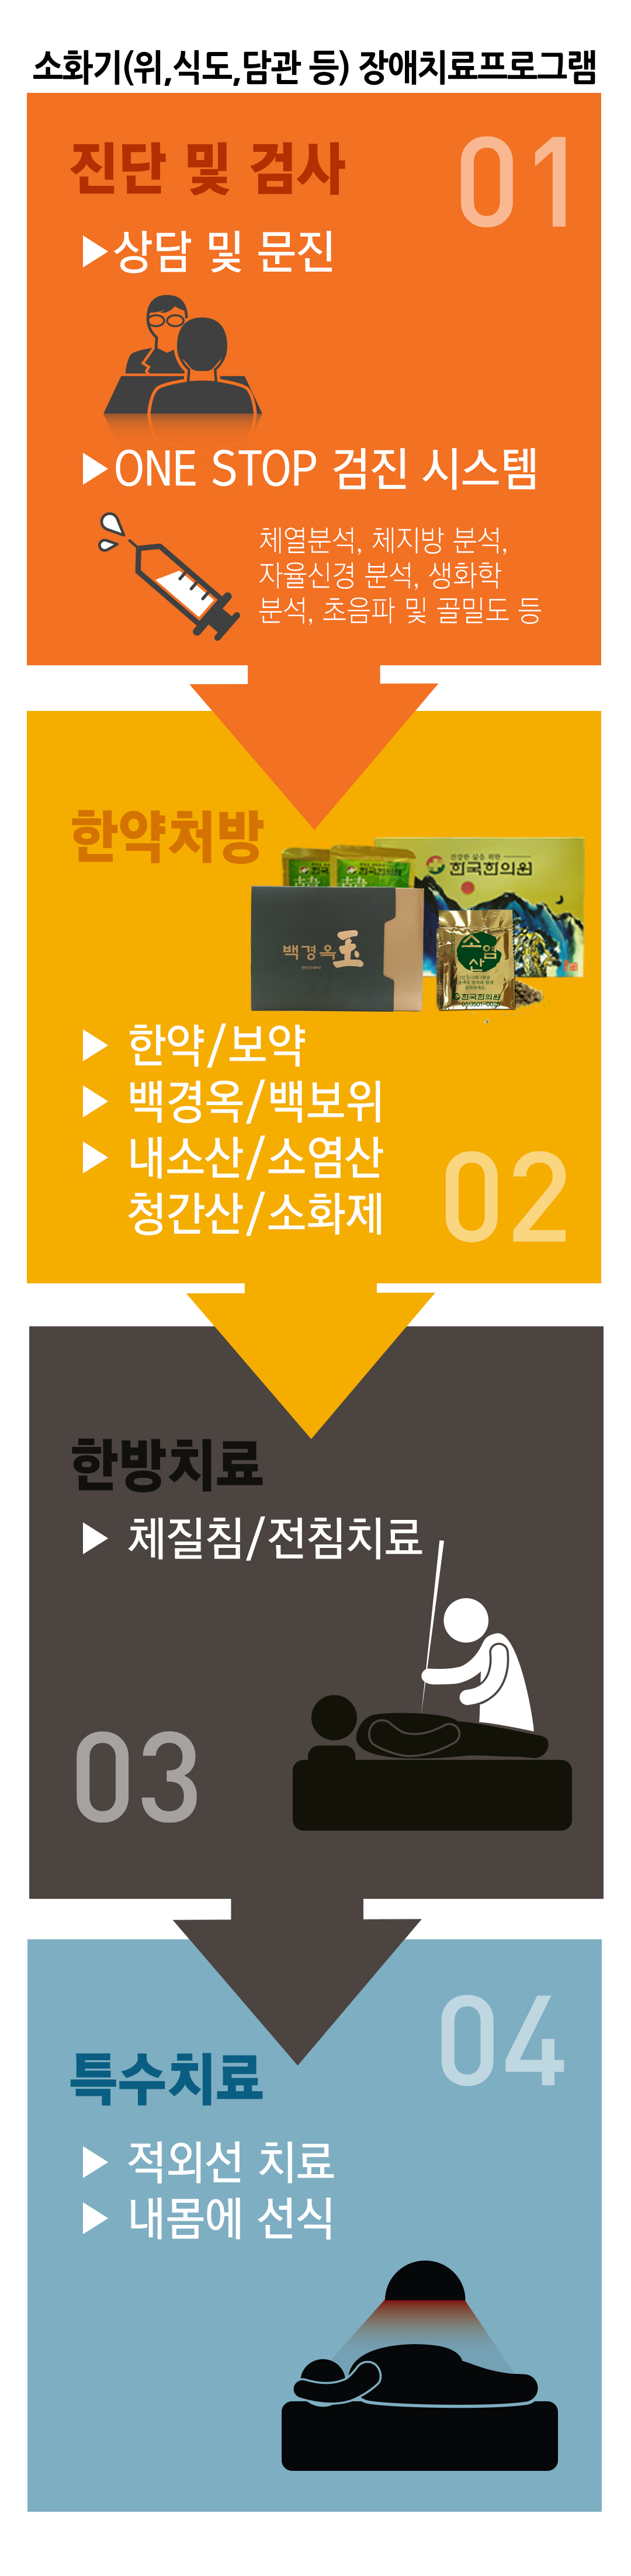 한국한의원, 한국한의원 소화기 클리닉, 치료범위, 변비, 설사